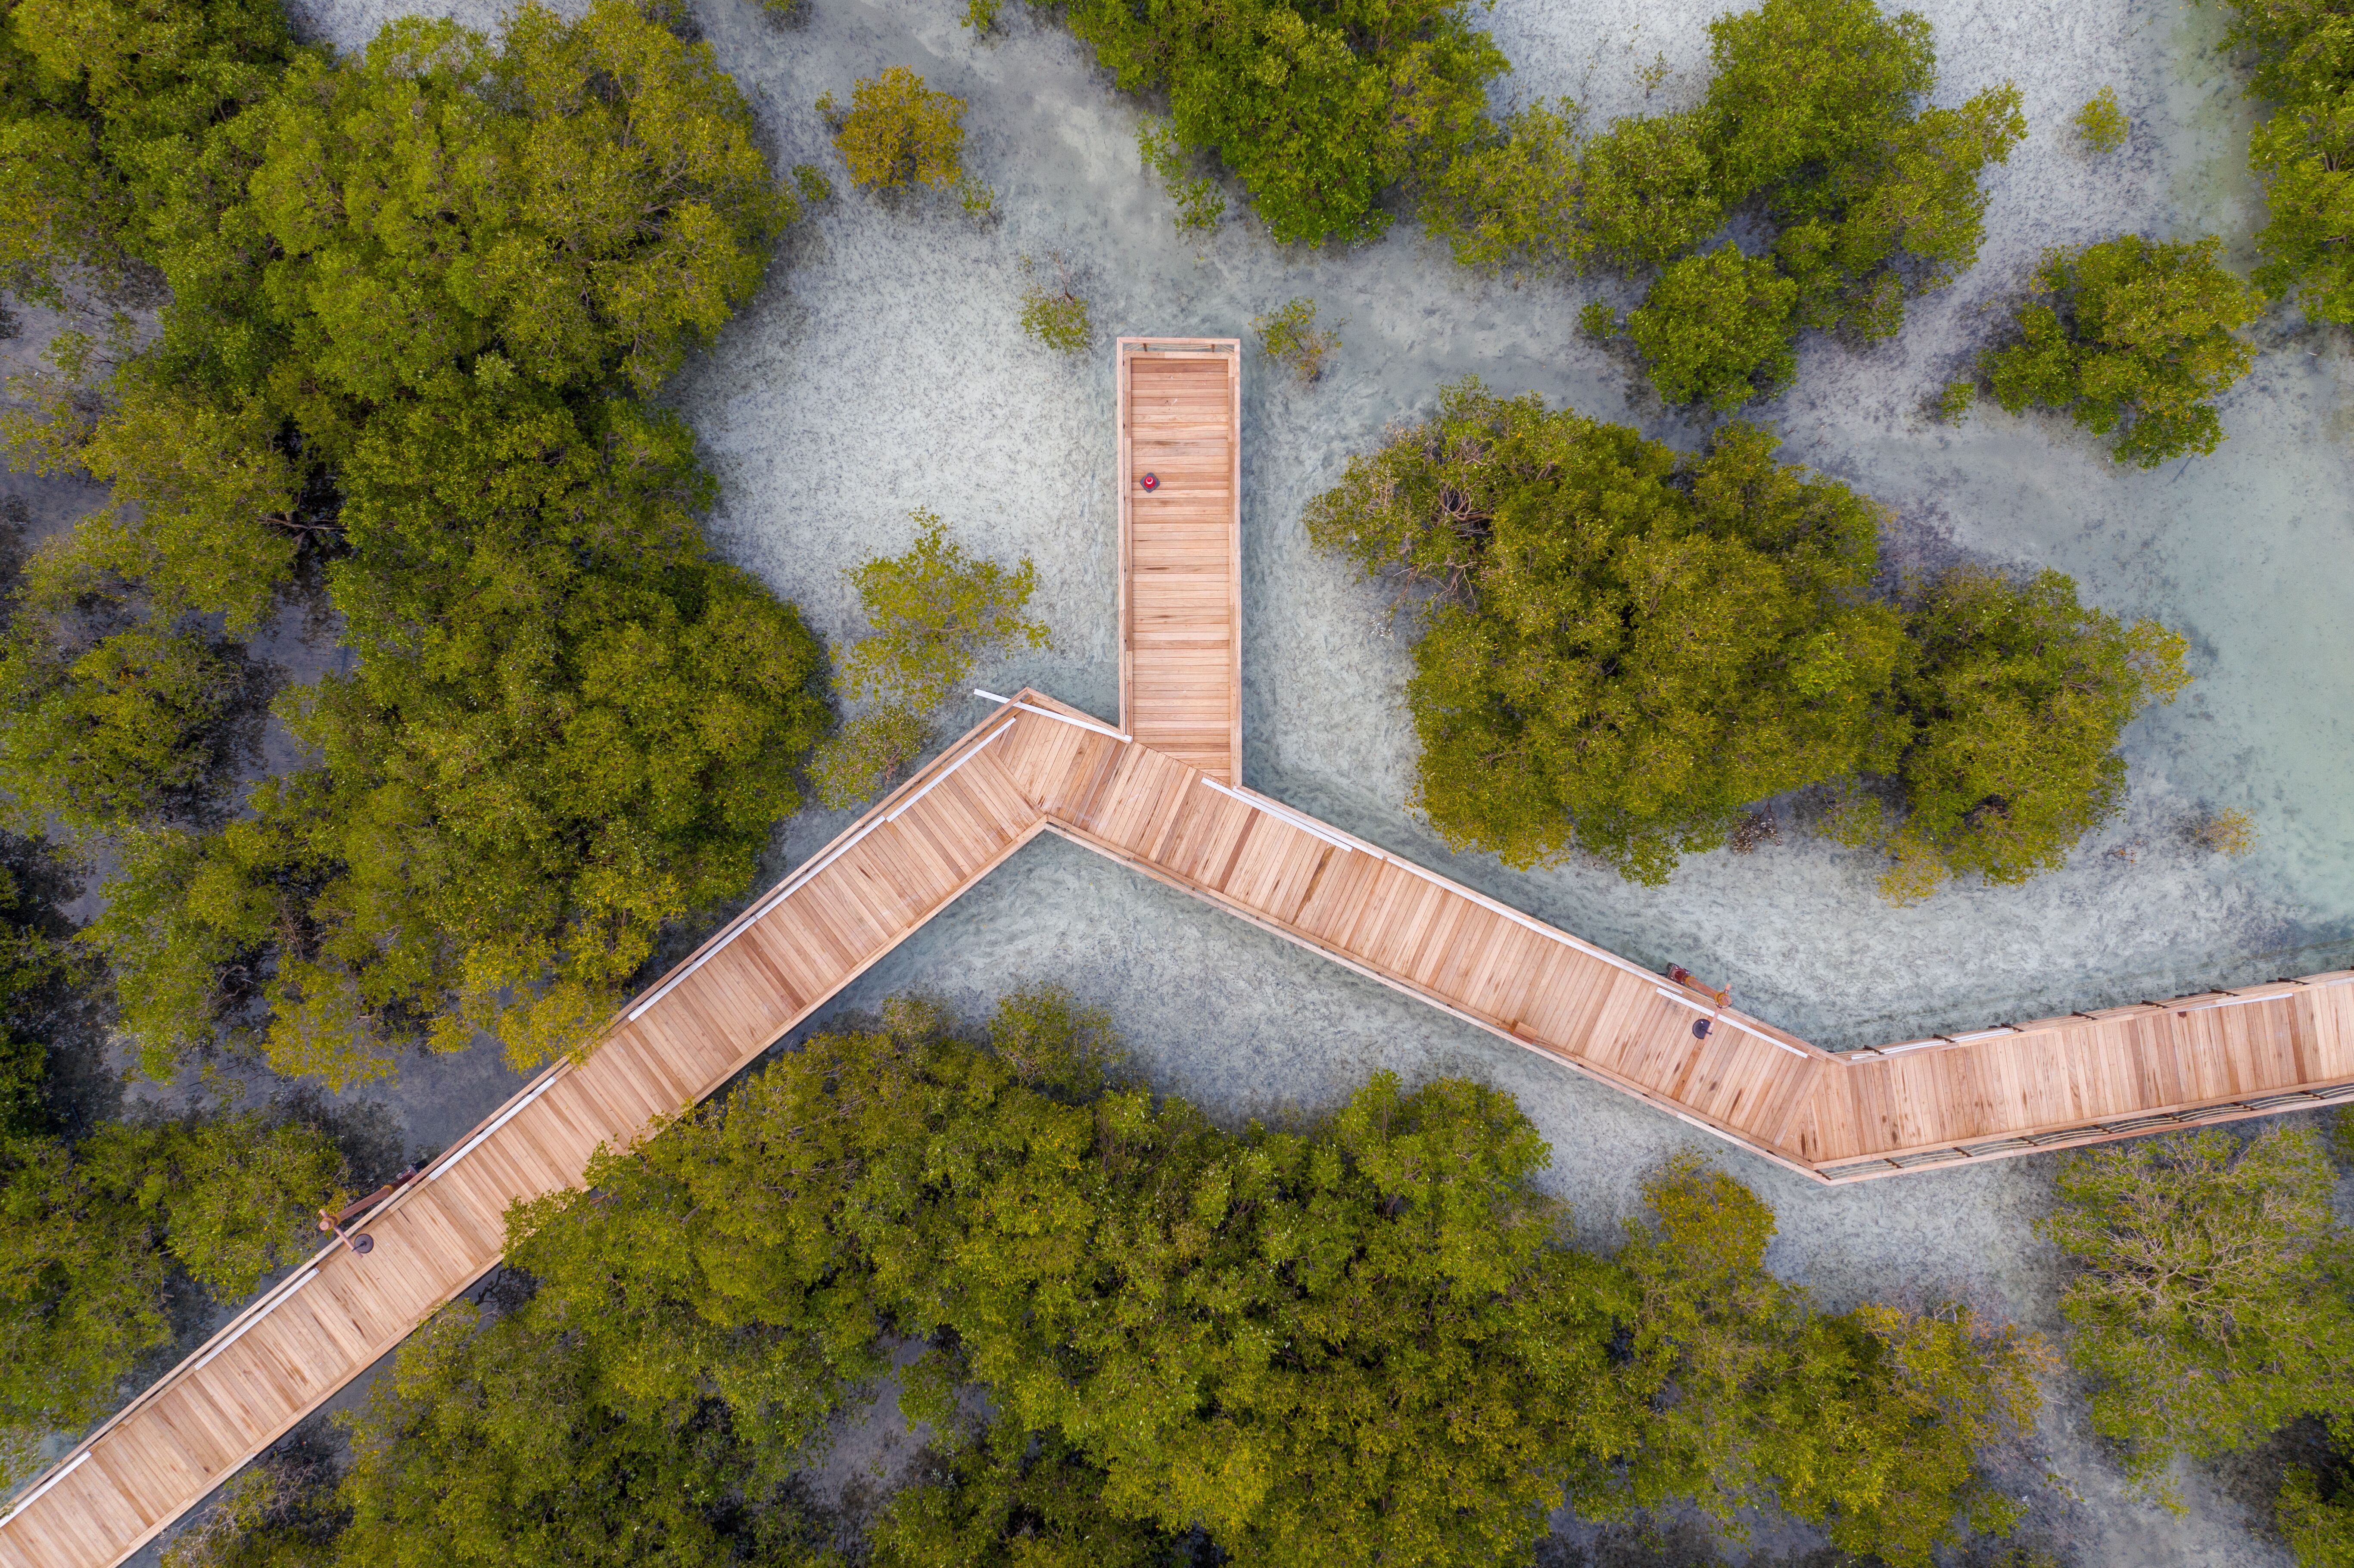 لقطة من الأعلى للممشى الخشبي في منتزه قرم الجبيل